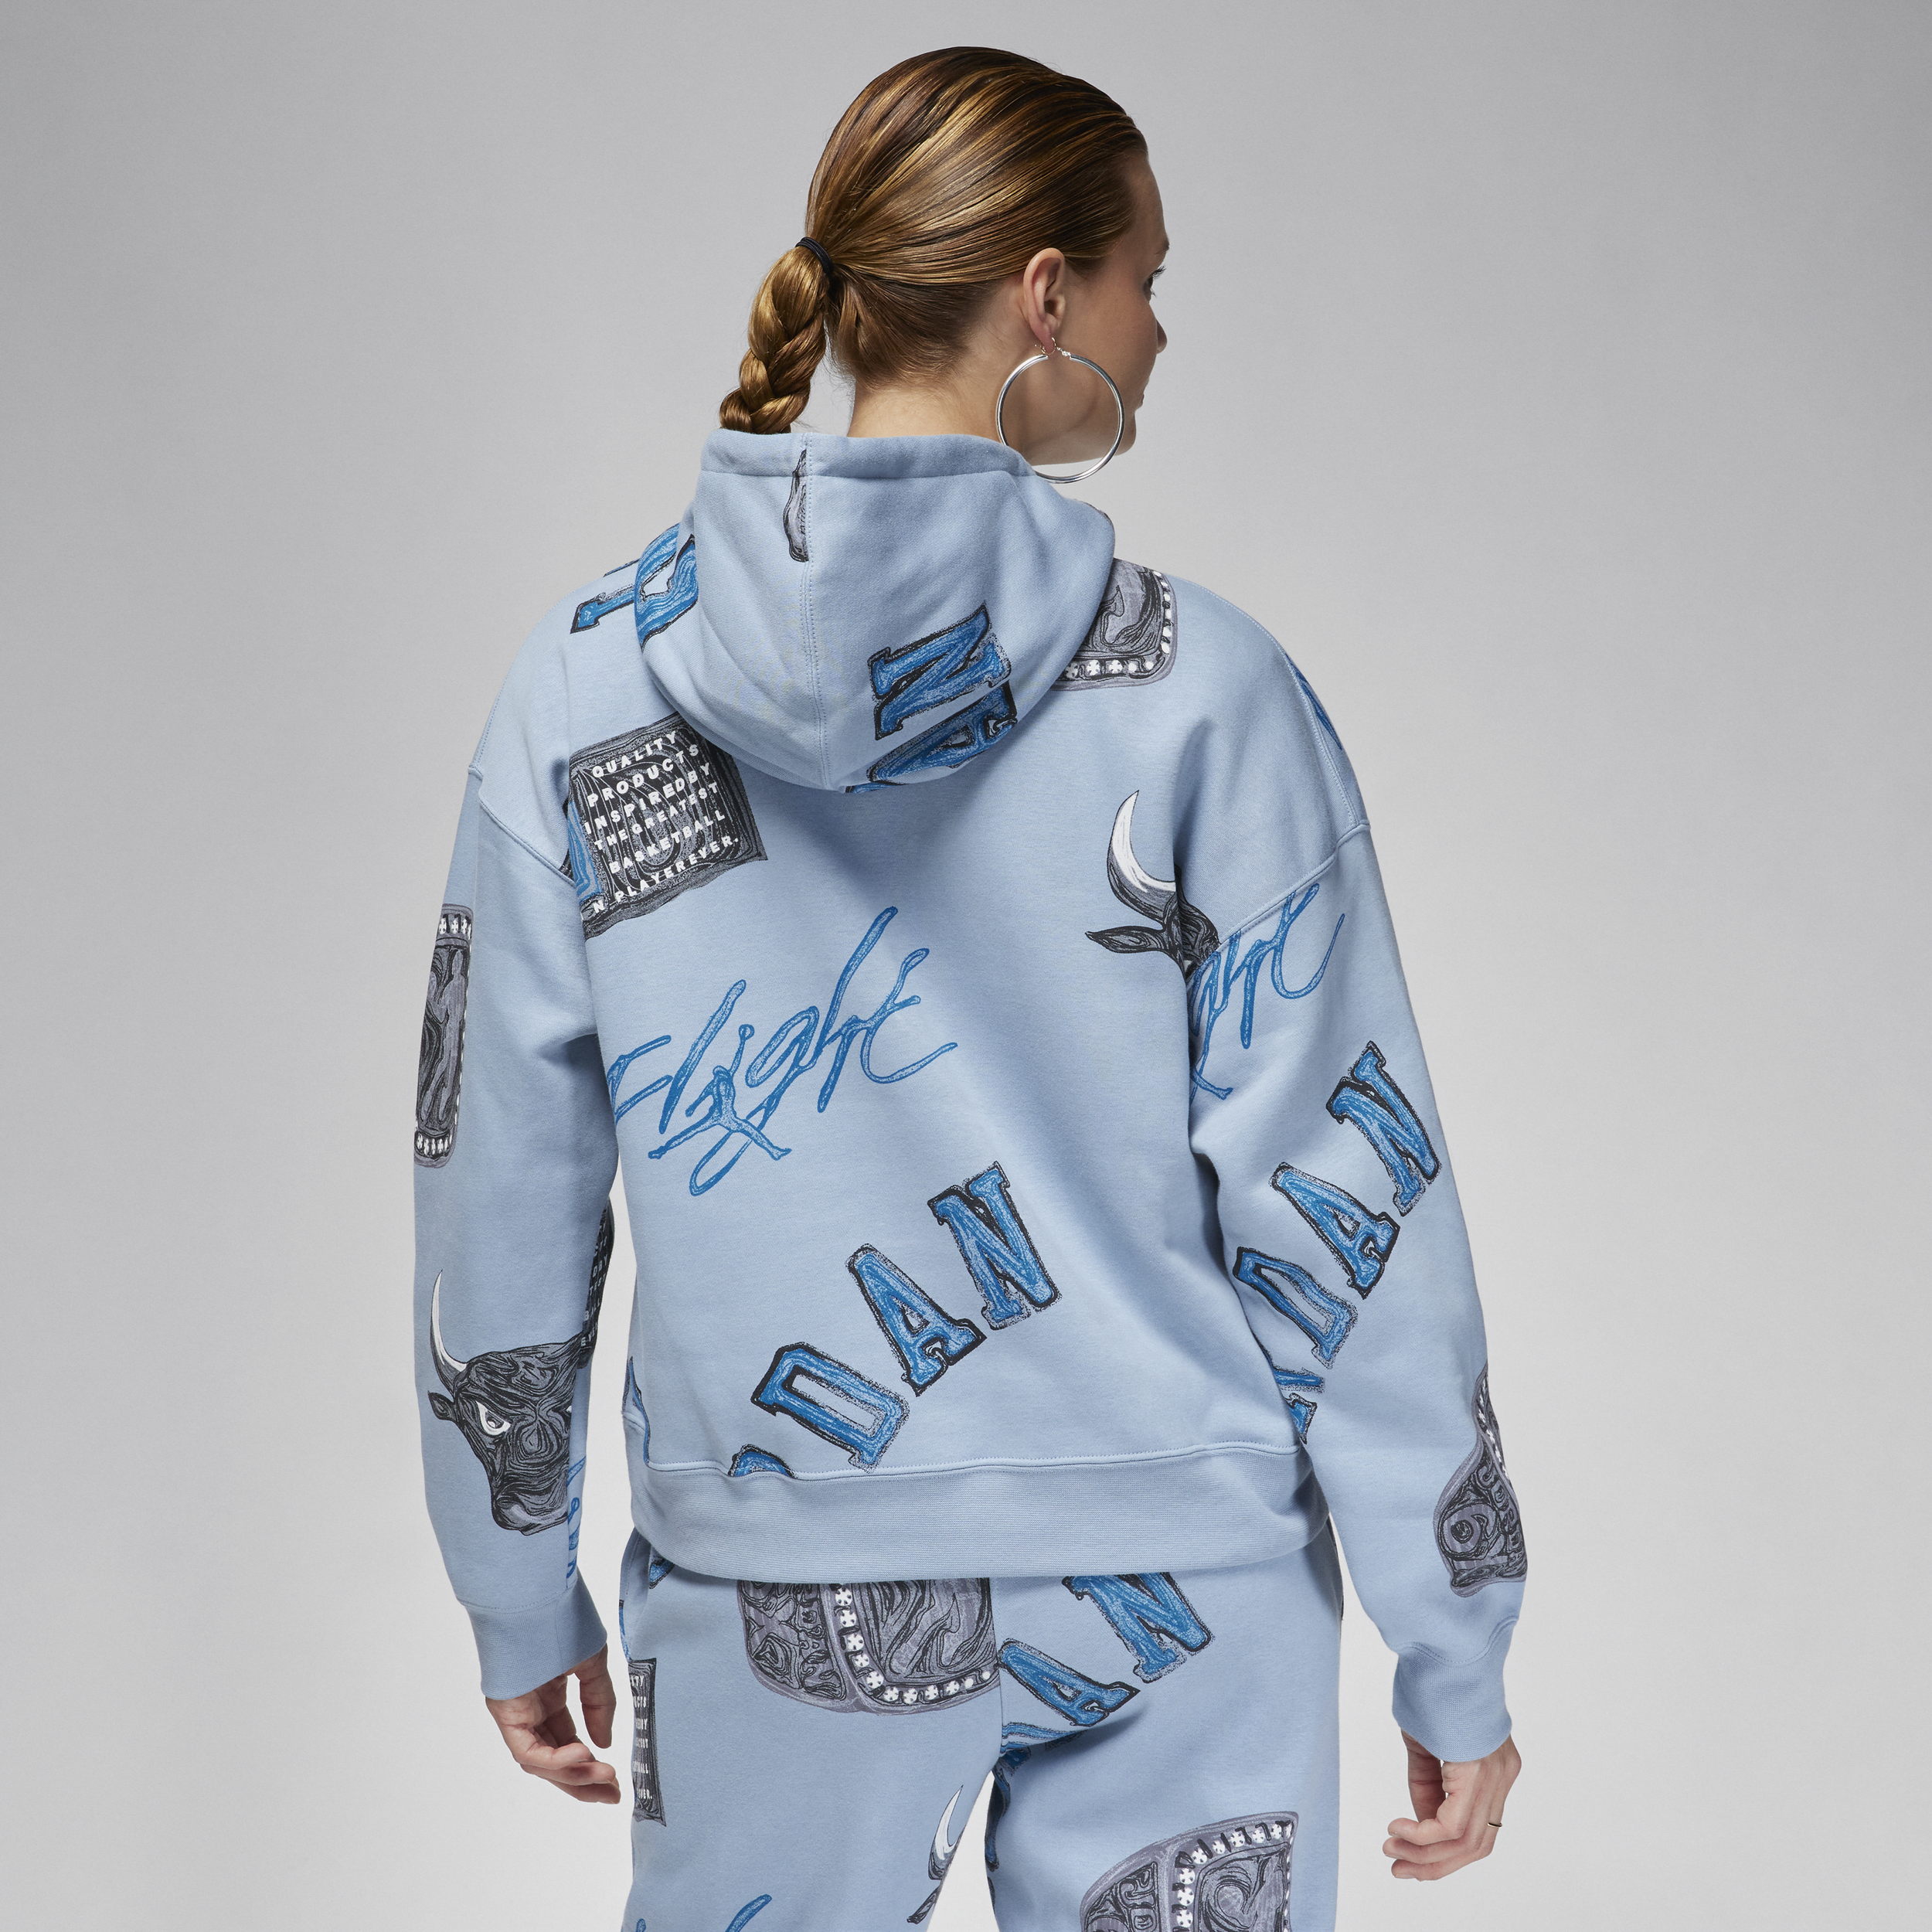 Jordan Brooklyn Fleece hoodie voor dames Blauw